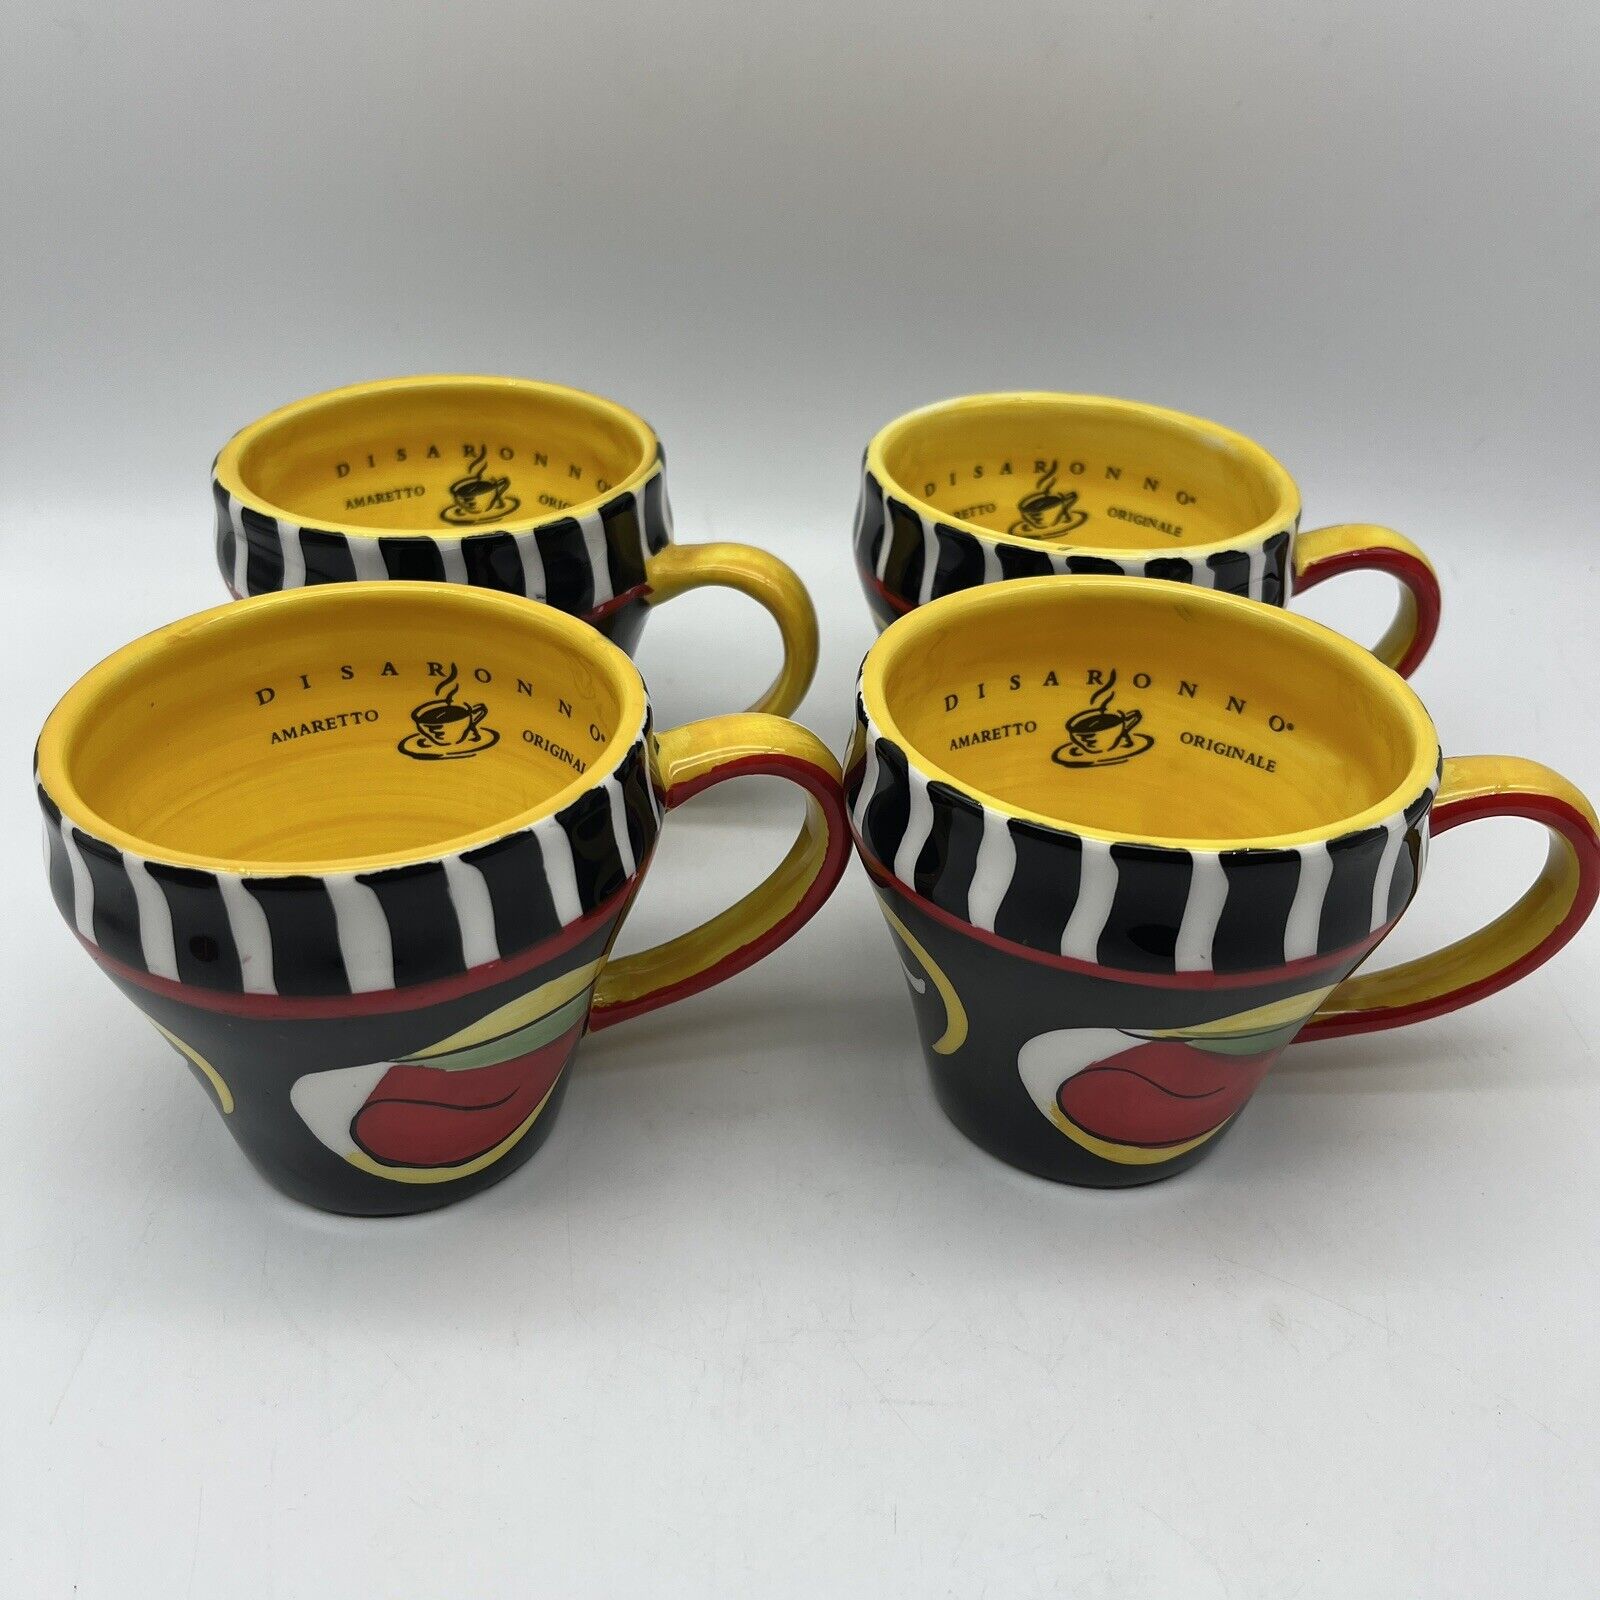 Disaronno Originale Italian Amaretto Coffee Cup Mug 3.5\